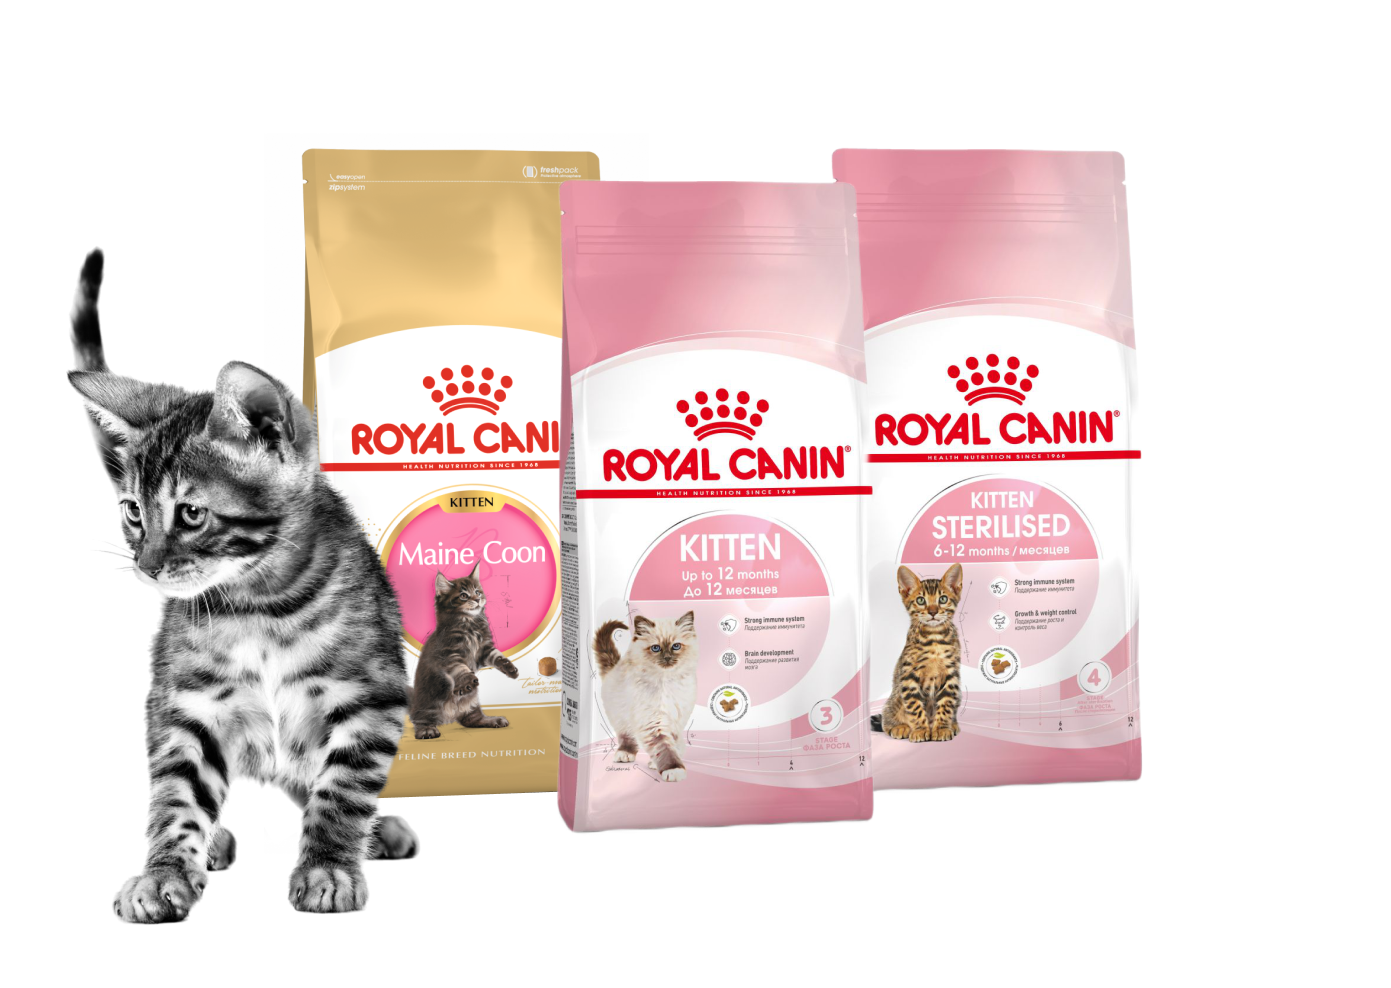 Сухой корм Royal Canin для кошек